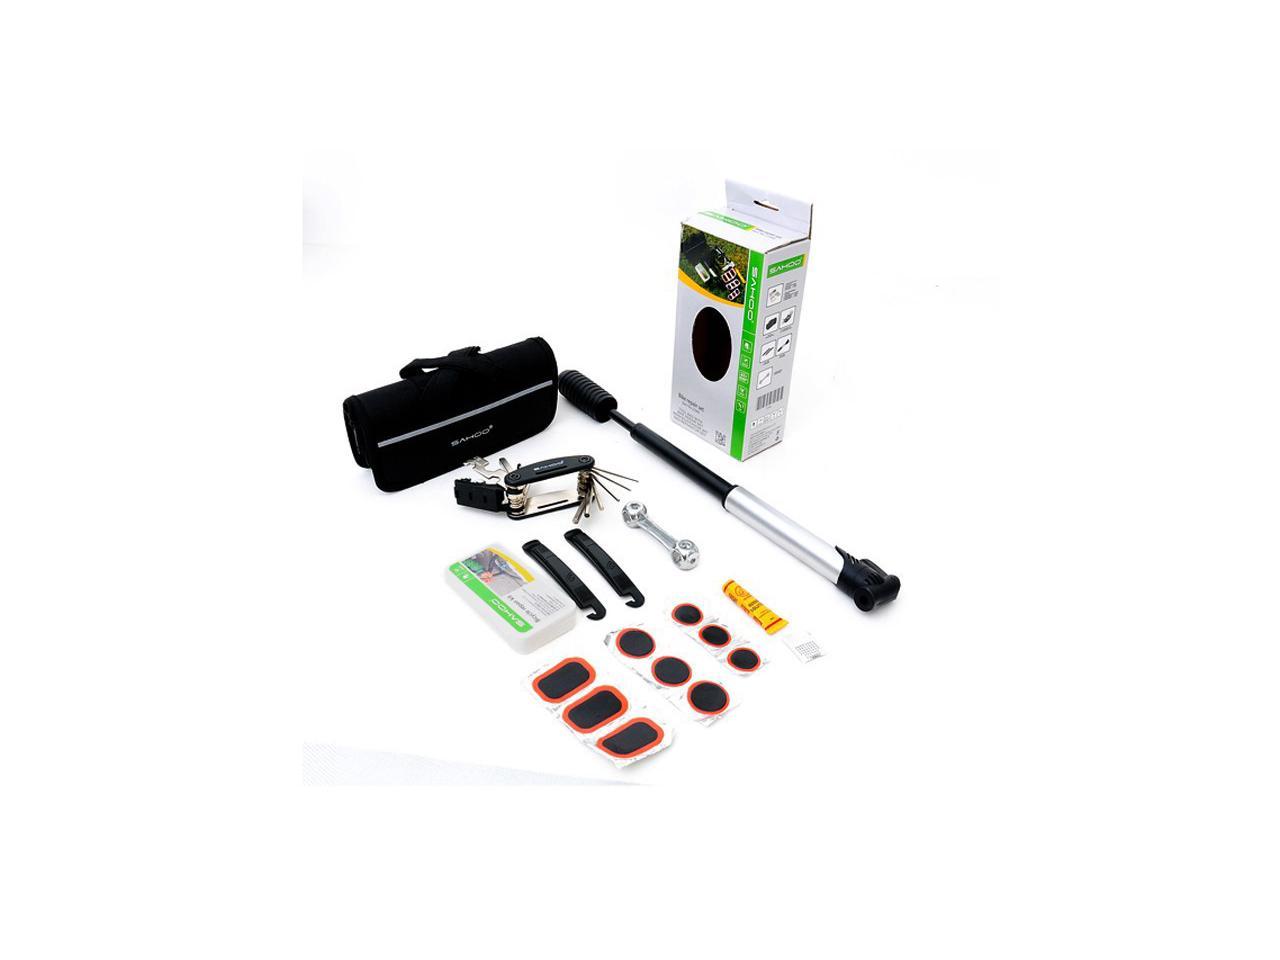 bike puncture repair kit with pump